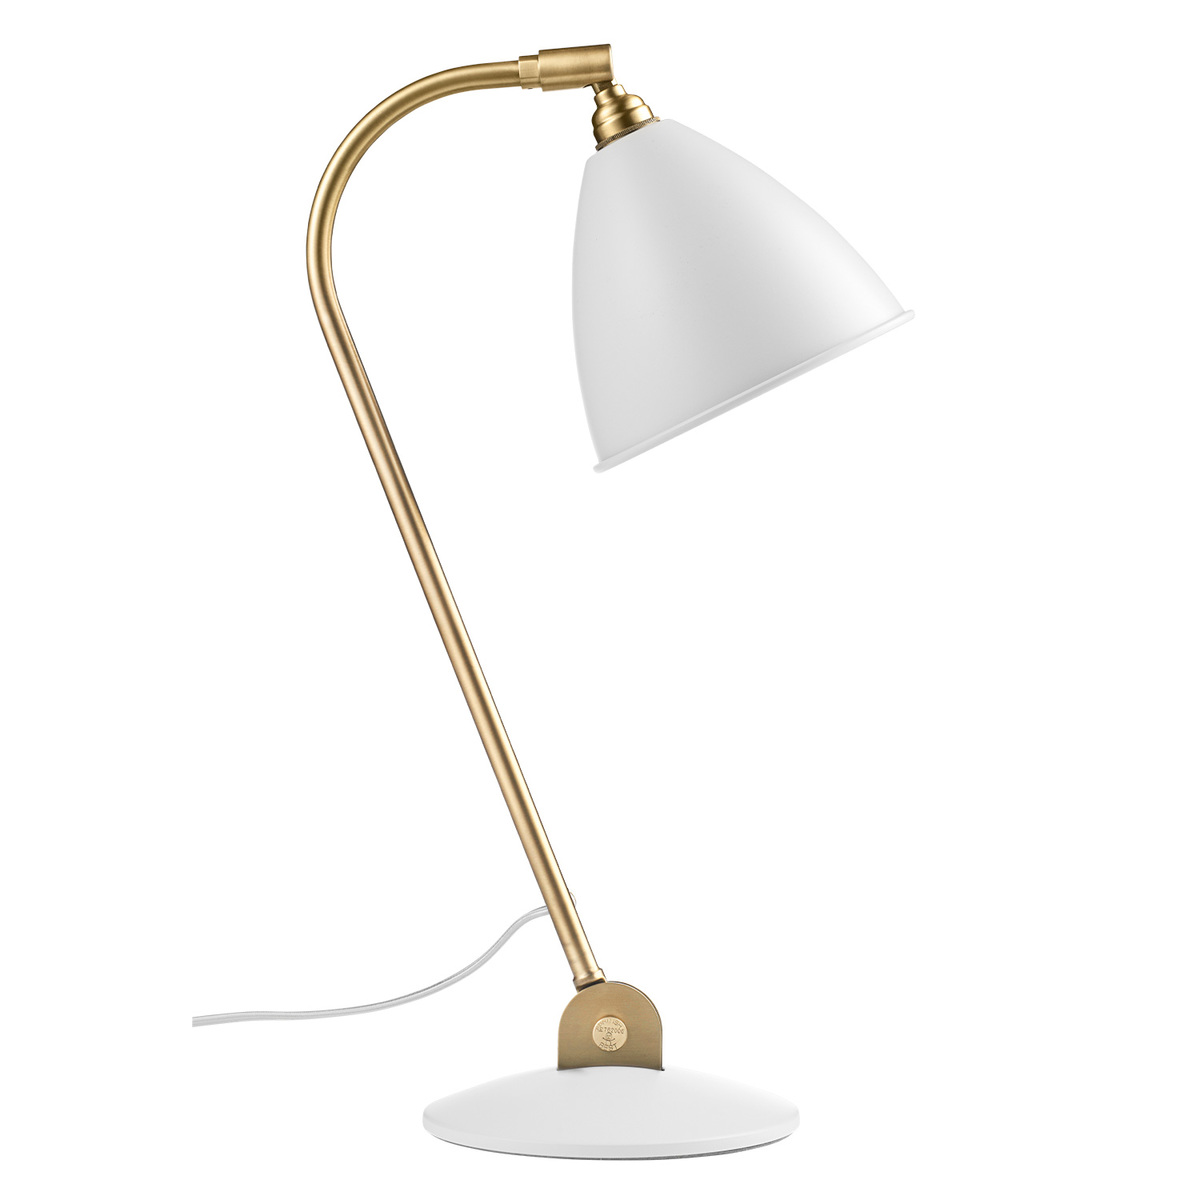 Gubi Bestlite Bl2 Table Lamp, Brass - Soft White